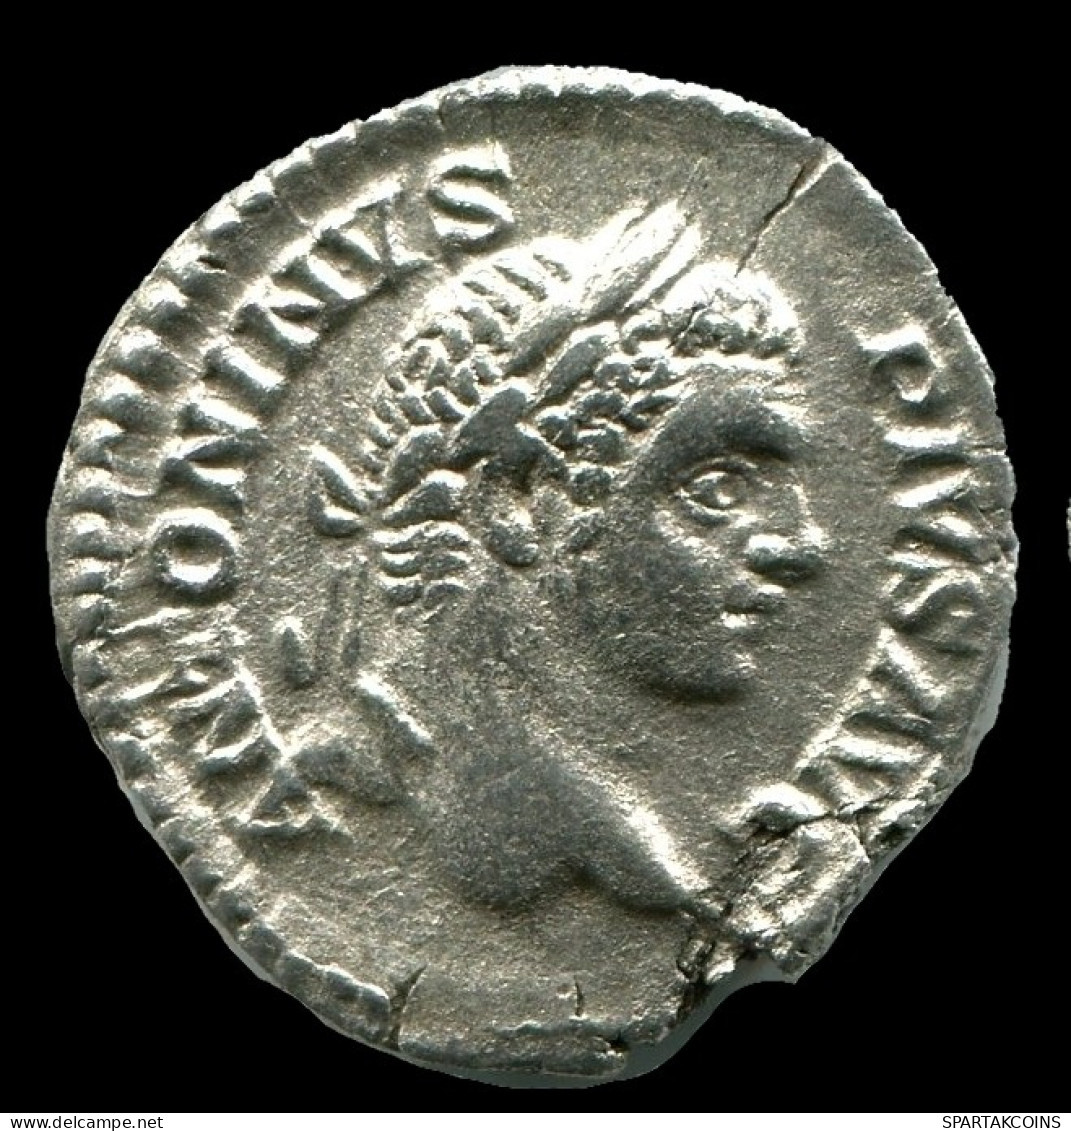 CARACALLA ANTONINUS AR DENARIUS AD198 - 217 PONTIF TR P X COS II #ANC12346.78.E.A - Les Sévères (193 à 235)